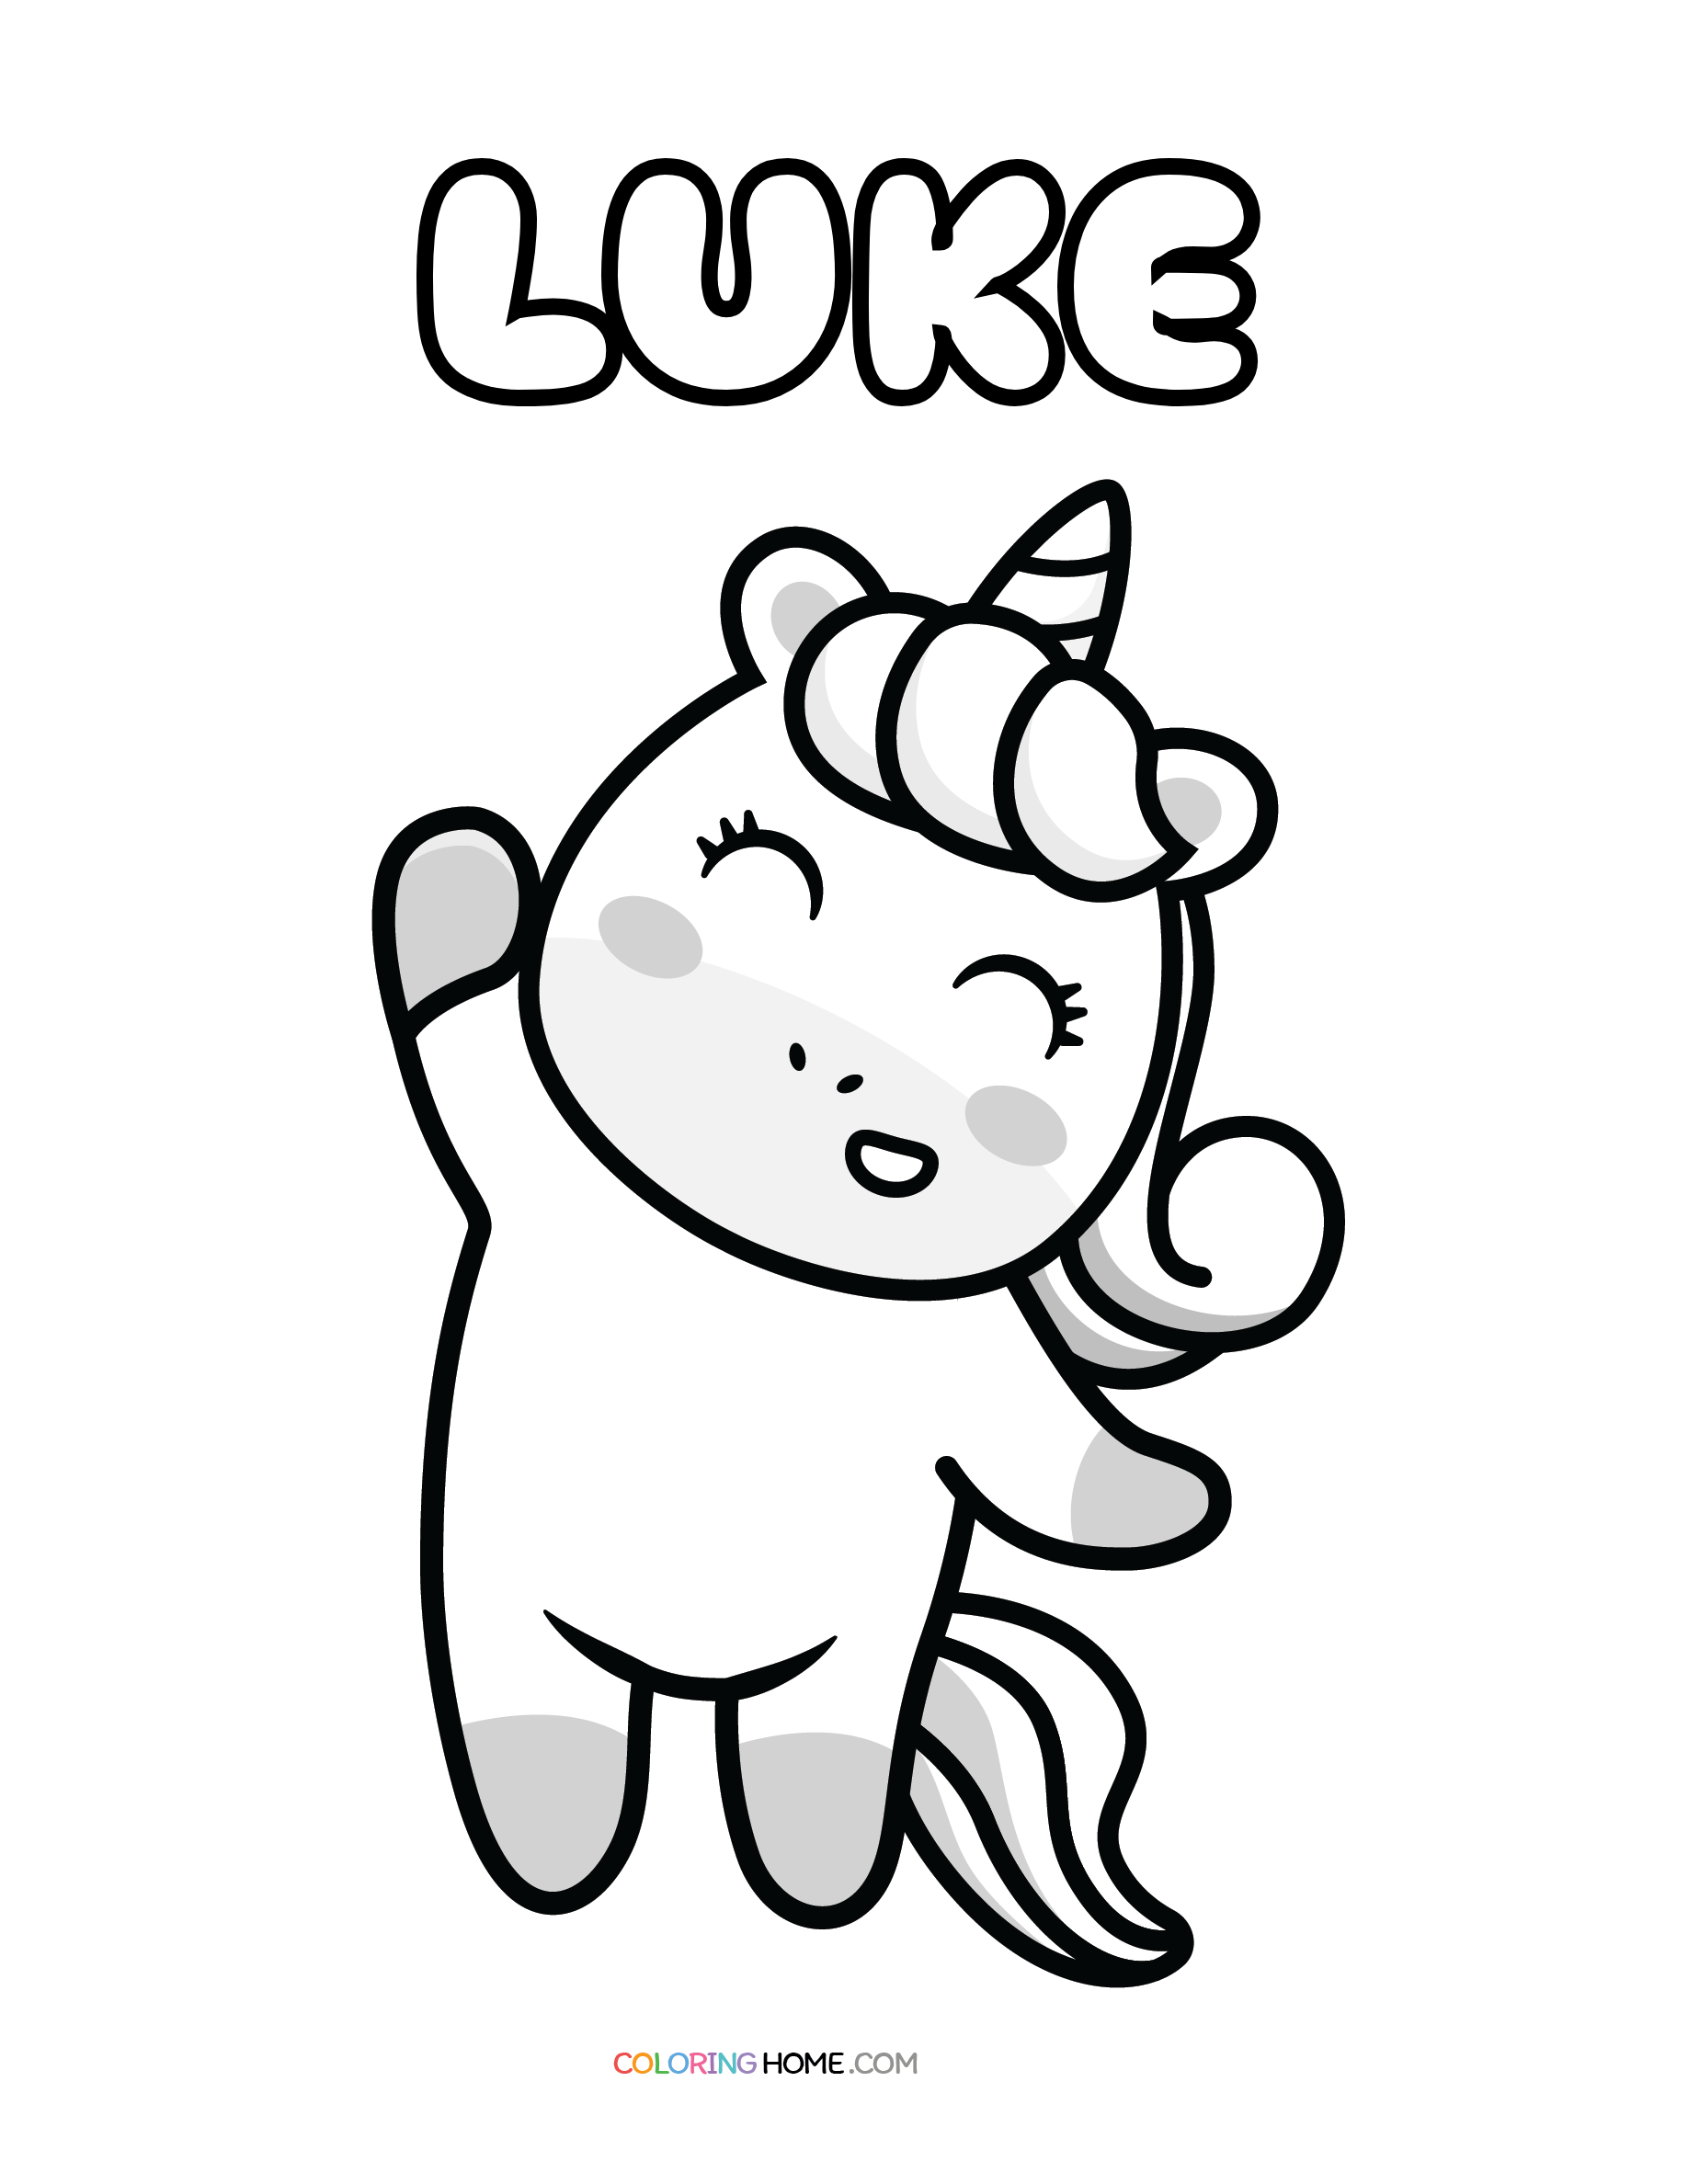 Luke unicorn coloring page